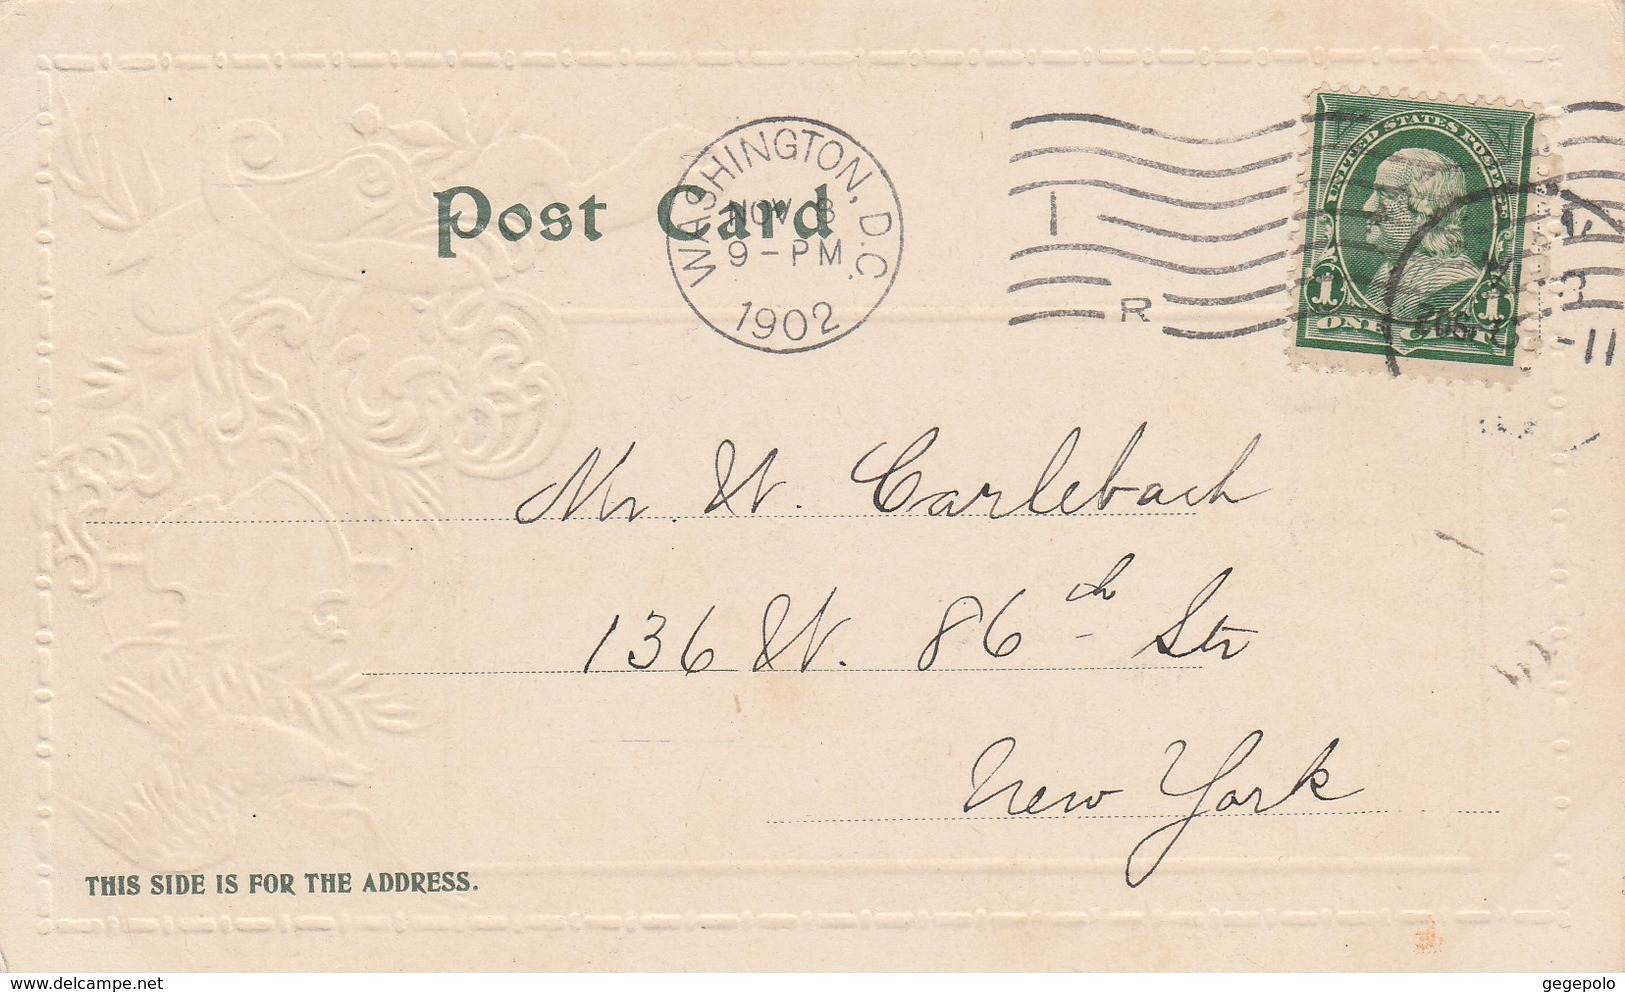 WASHINGTON D.C. - 5 cartes postales écrites en 1902 à destination de New York City  ( cartes en relief rares )